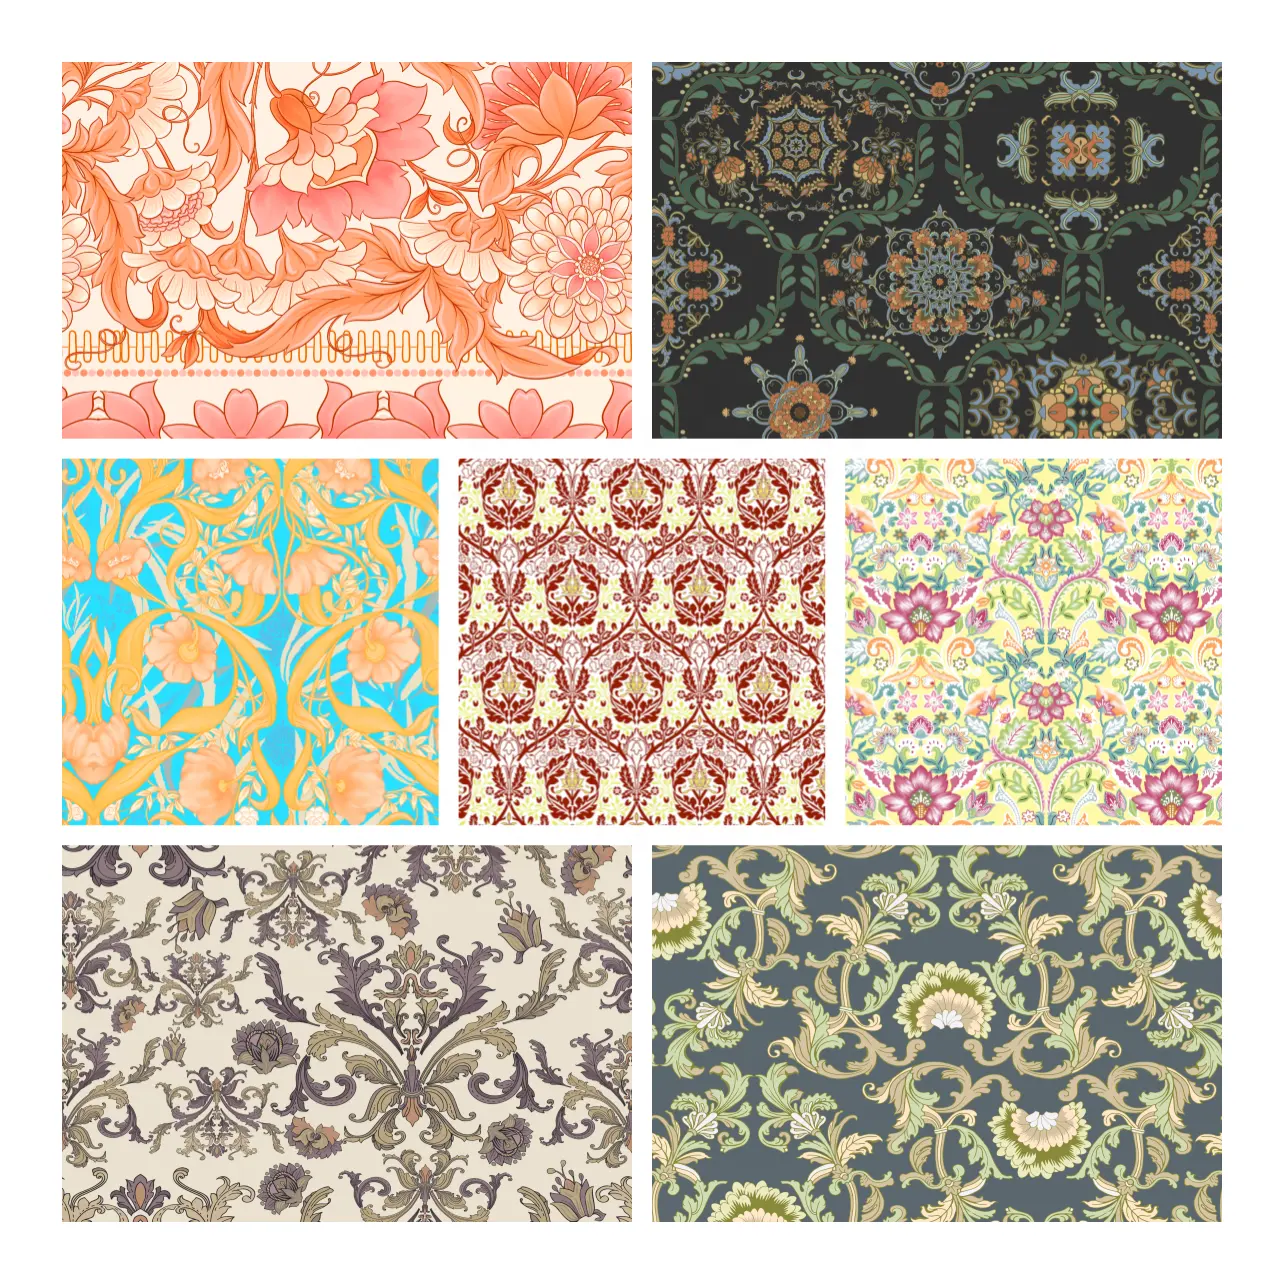 Diseñador de impresión patrón chino Boho Floral Digital impreso tapicería tela algodón para el hogar textil Deco